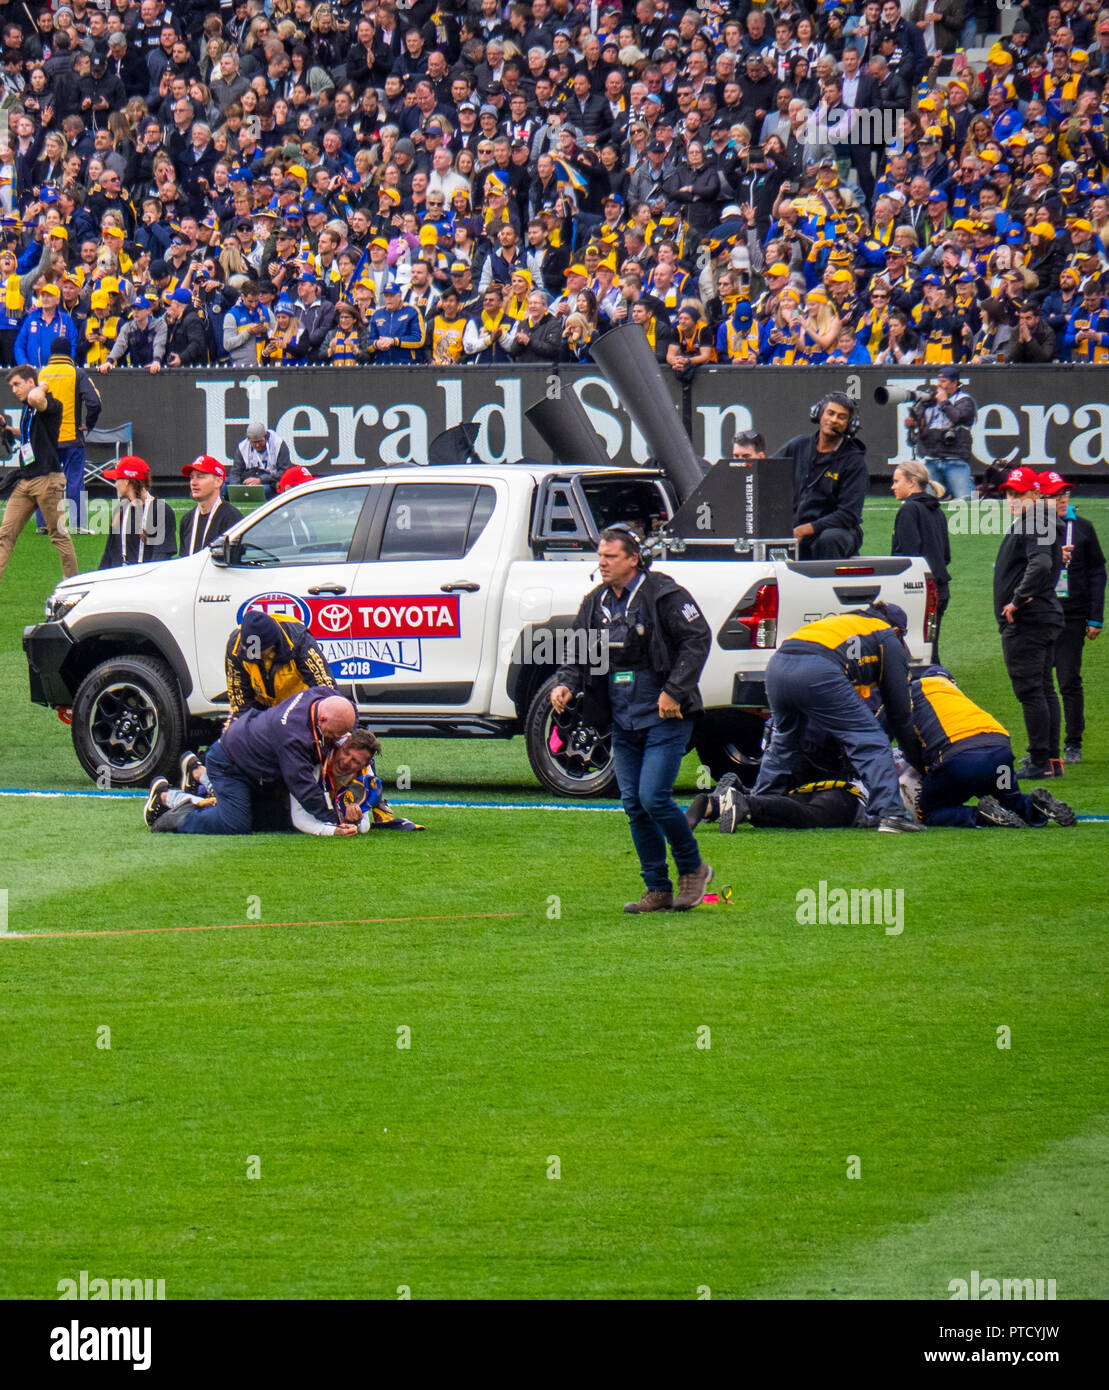 Ein Handgemenge zwischen Wachpersonal und zwei pitch Eindringlinge auf dem Boden in 2018 AFL Grand Final am MCG Melbourne, Victoria, Australien. Stockfoto